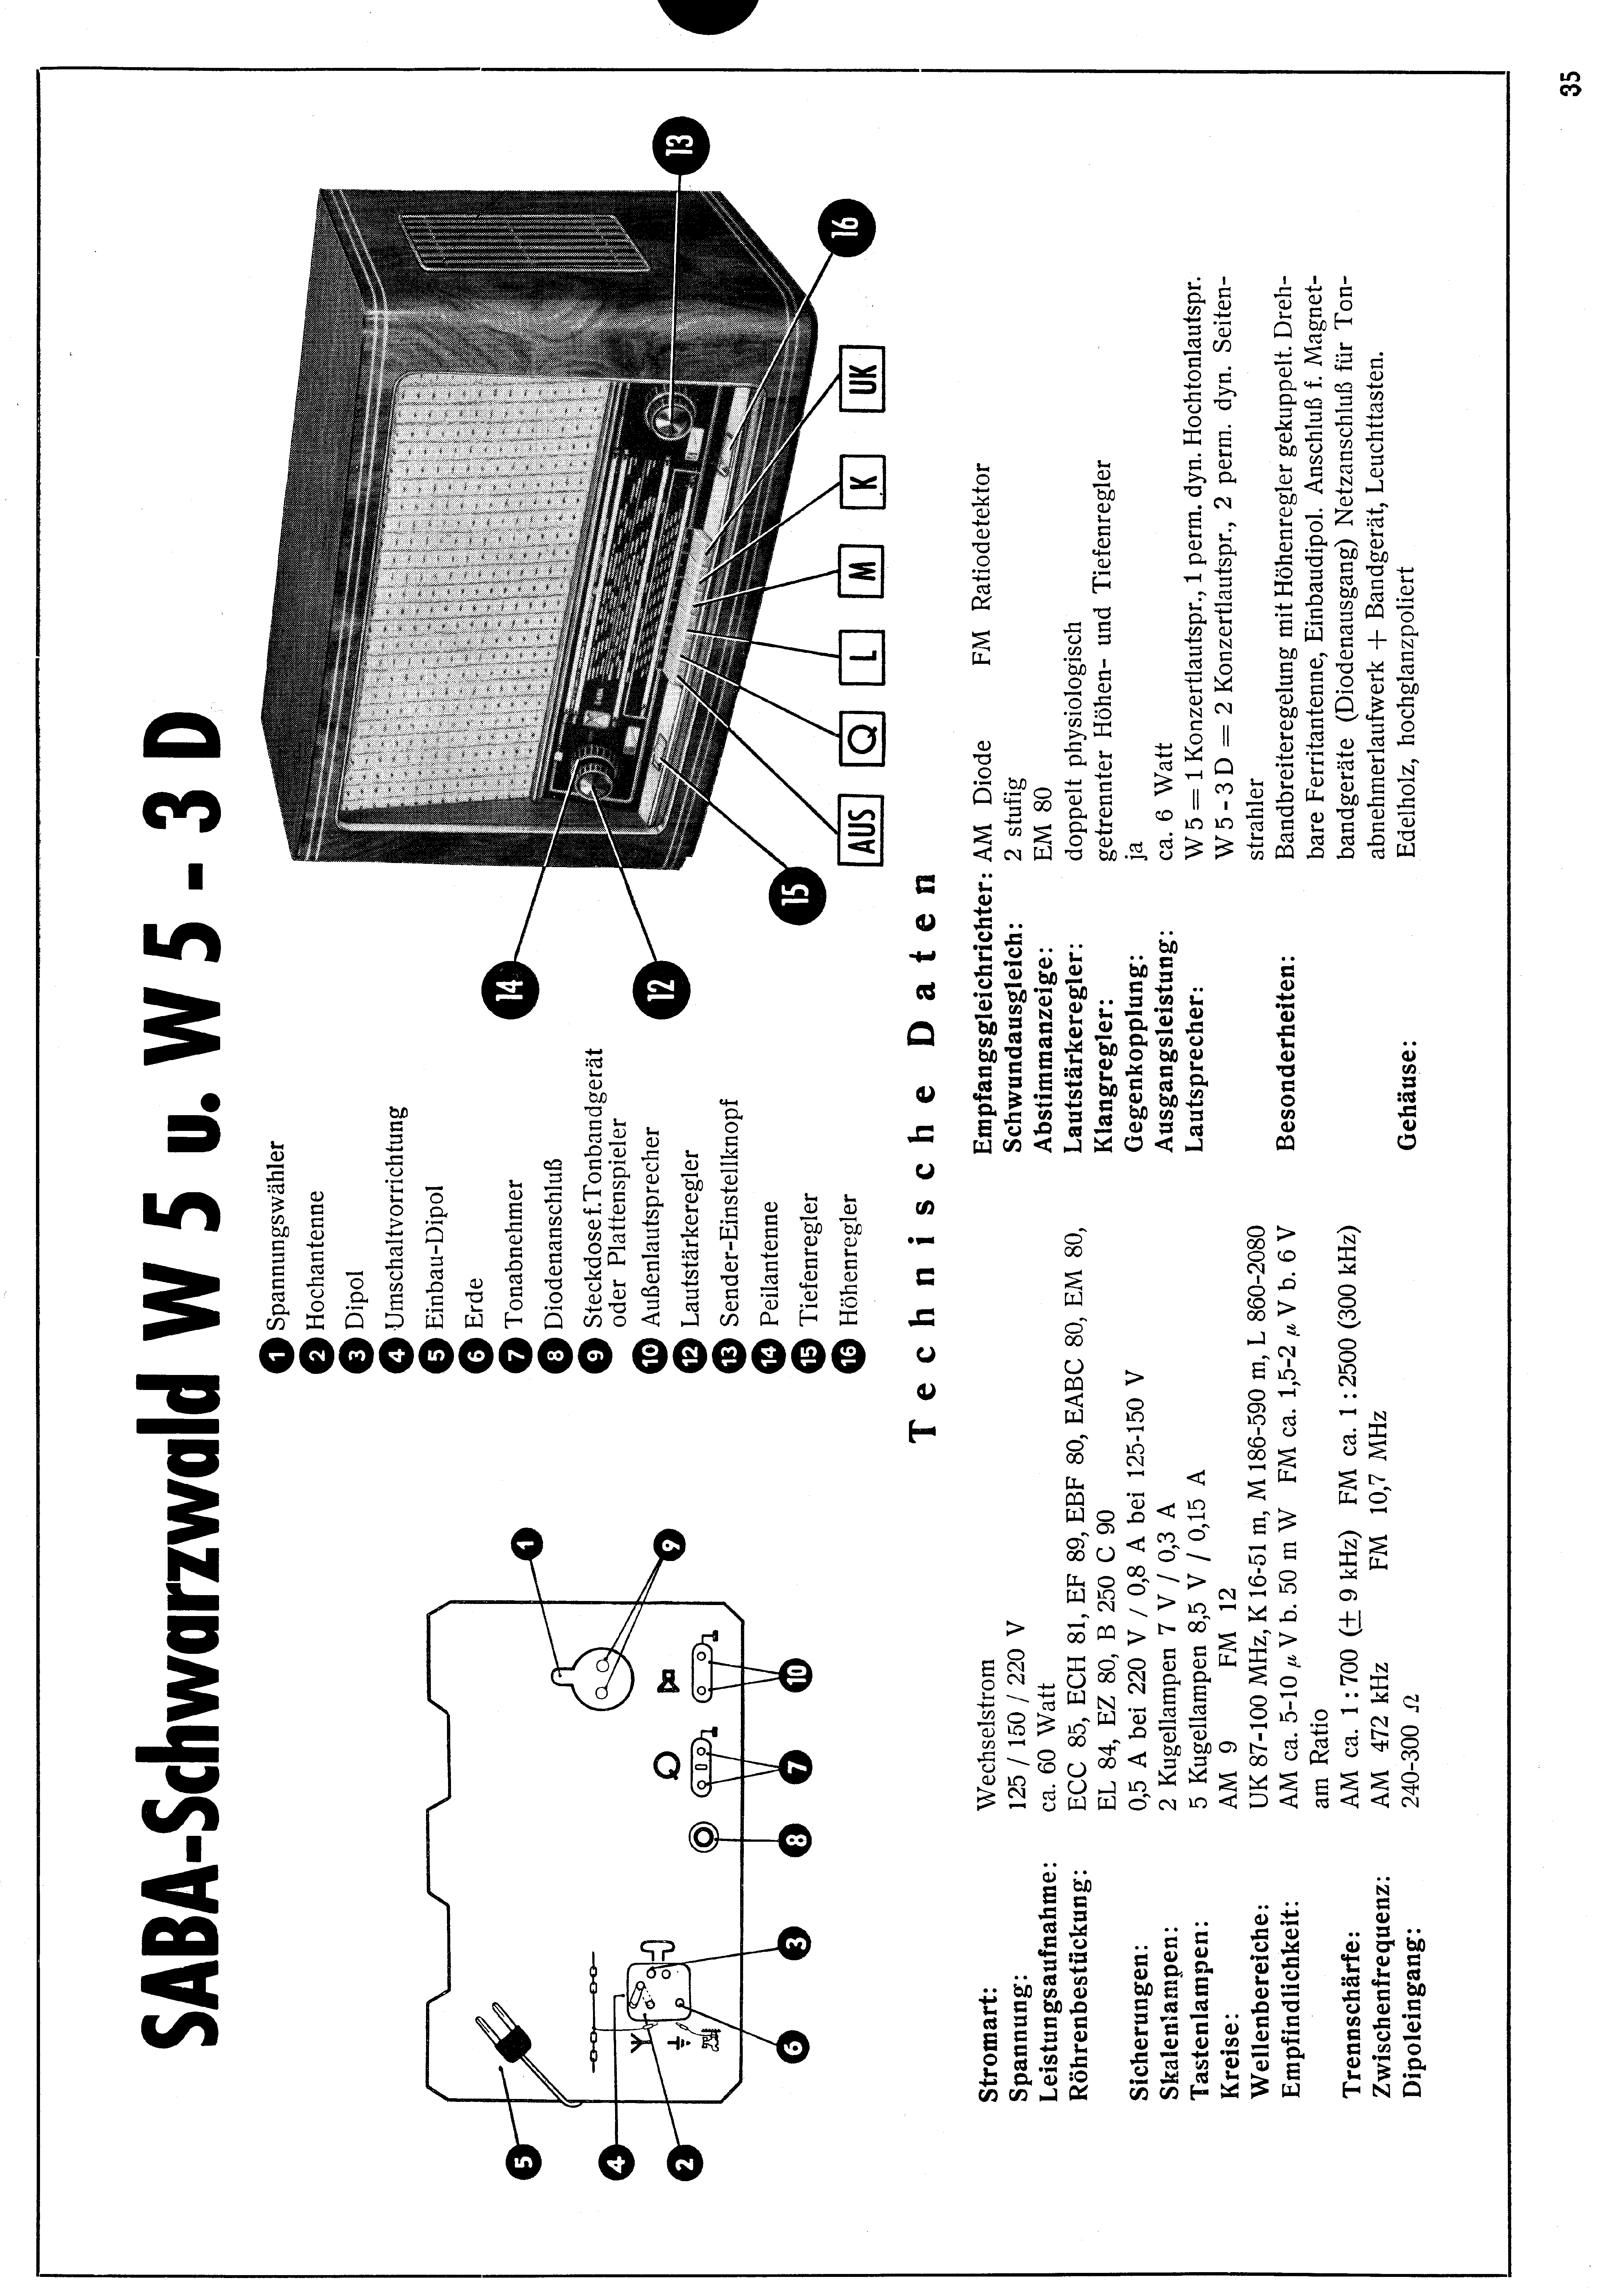 SABA SCHWARZWALD W5 SM service manual (1st page)